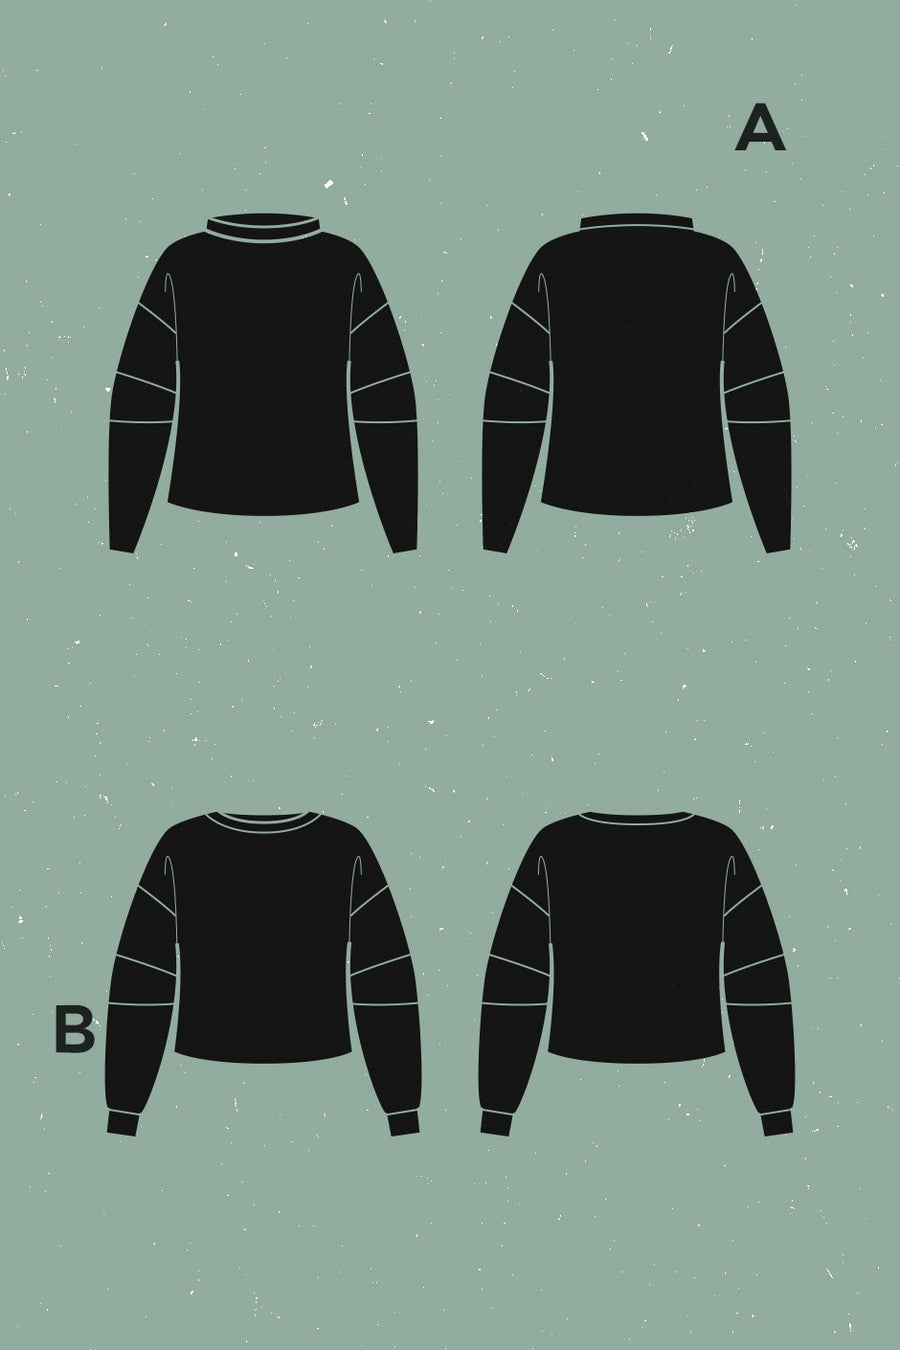 Neige Sweatshirt Pattern | Patron de Sweat Neige | Deer & Doe